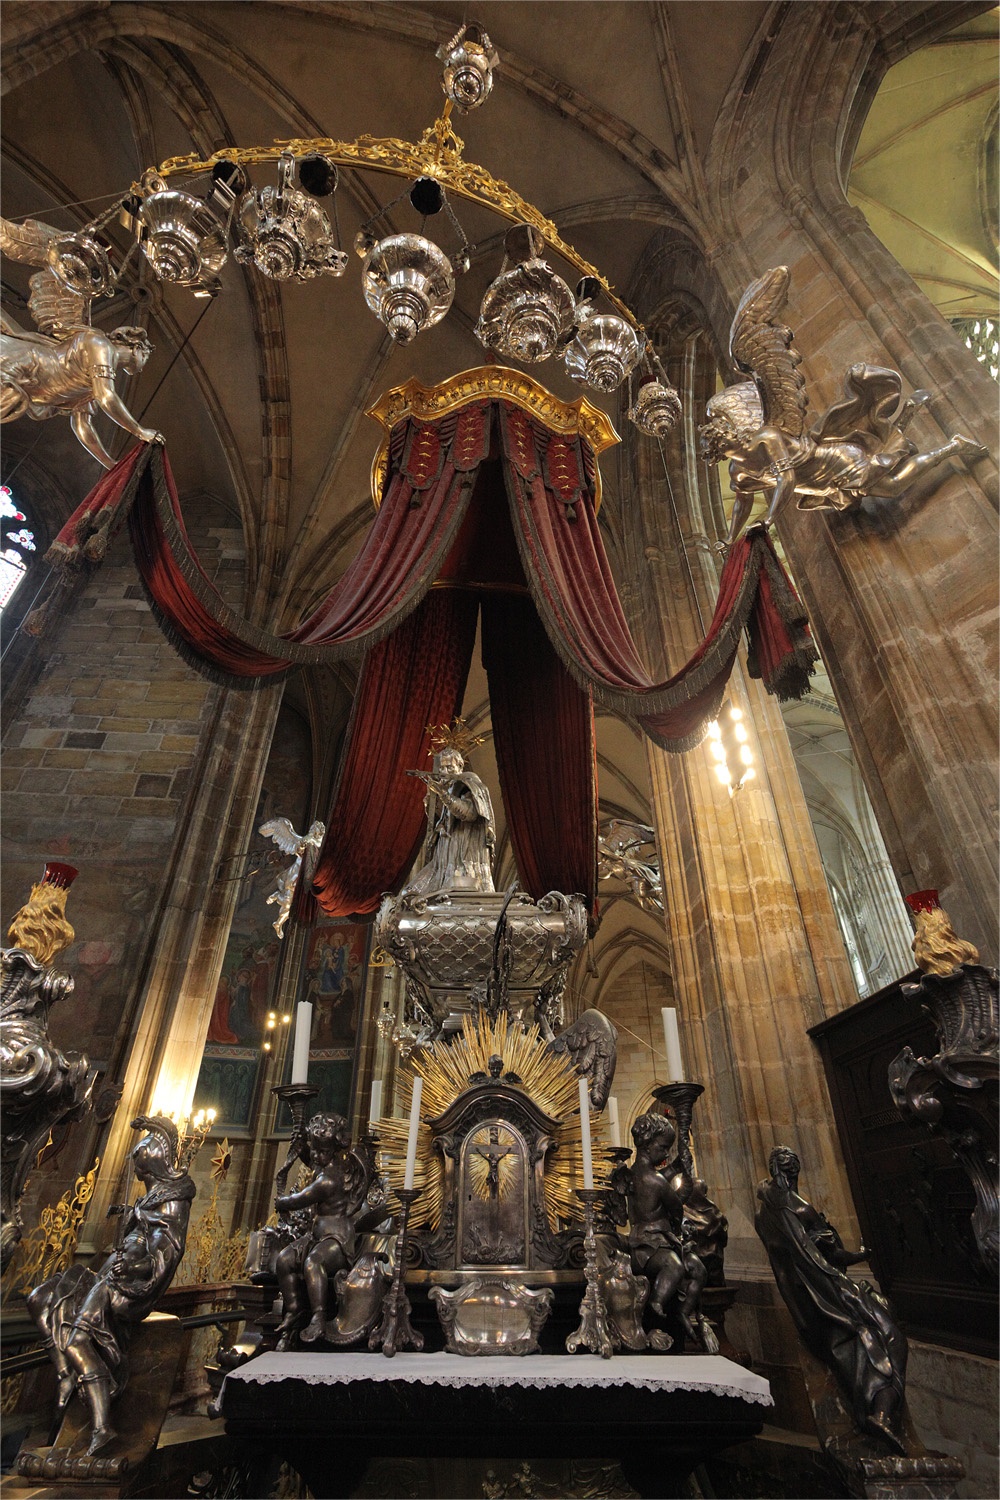 bill-hocker-st-vitus-cathedral-prague-czech-republic-2013